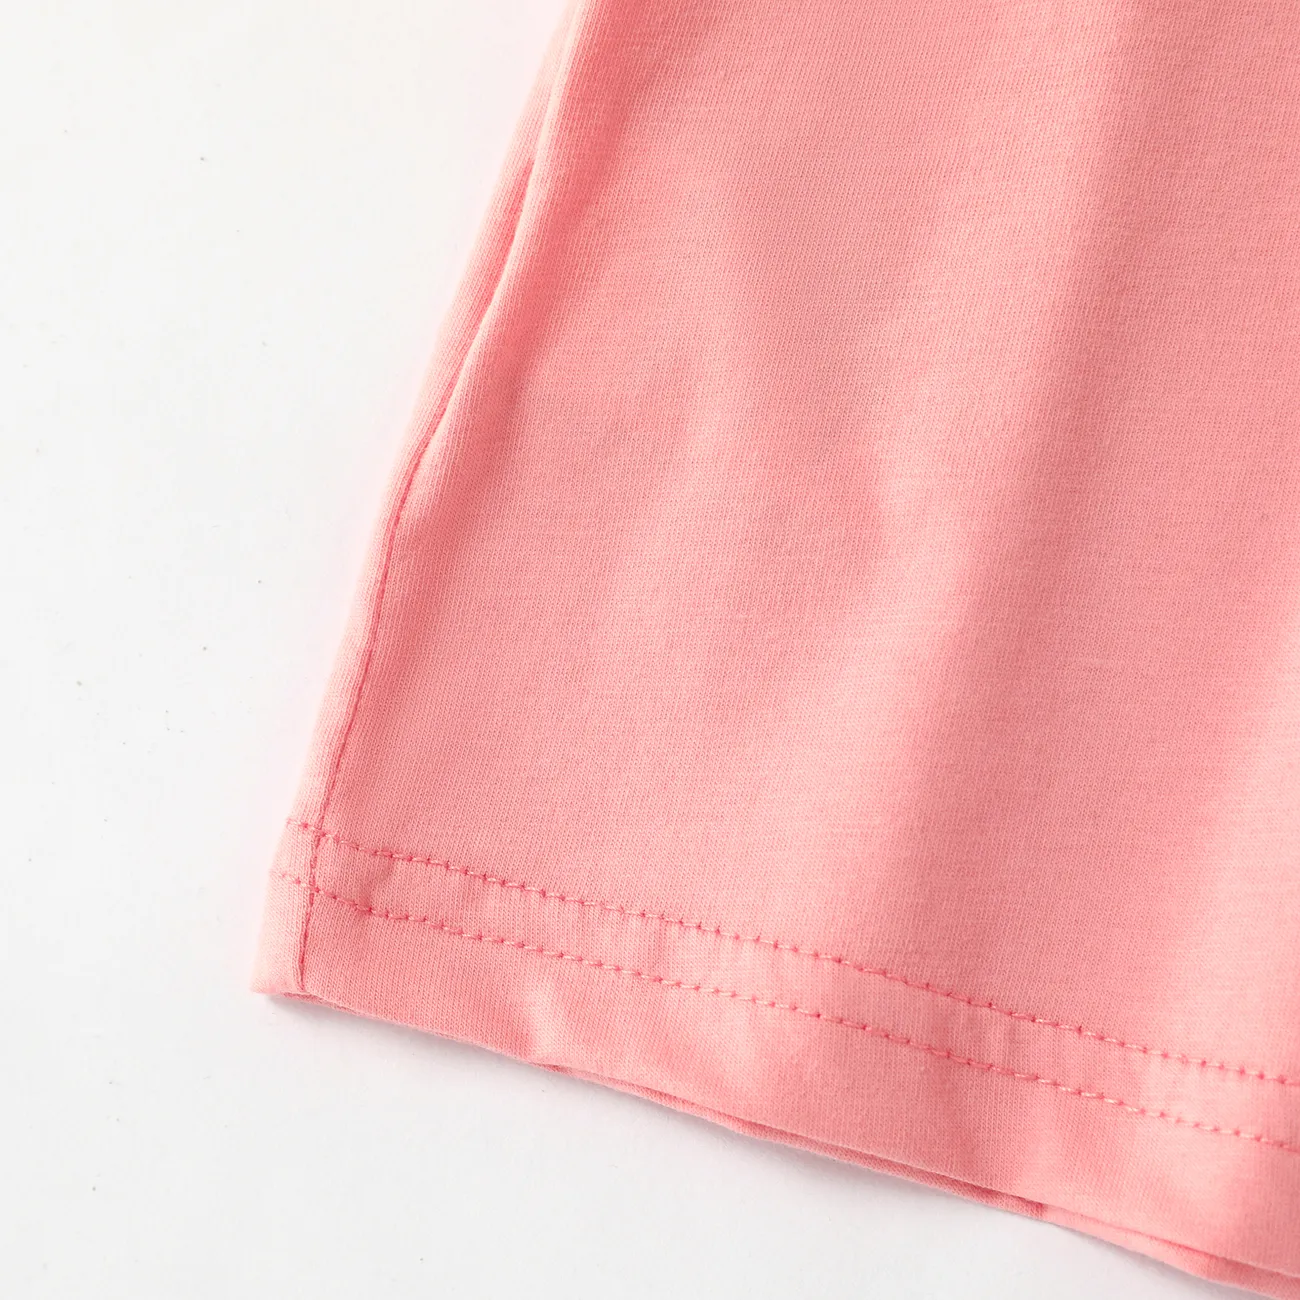 Baumwoll-Hängeriemen-Top-Set für Mädchen - Einfarbige Unterwäsche rosa big image 1